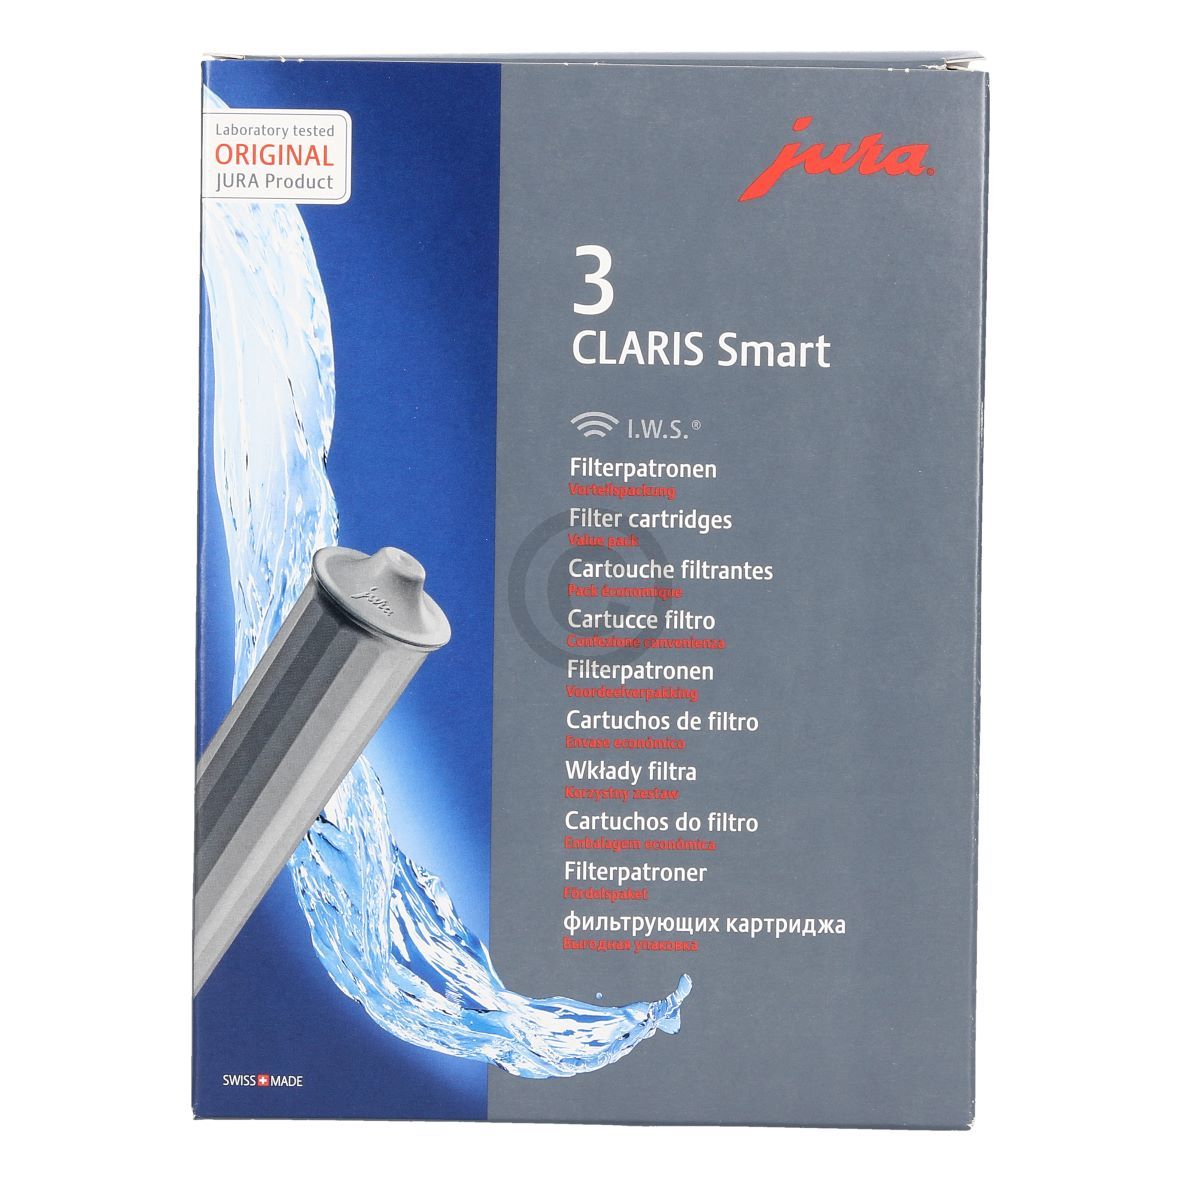 Wasserfilter jura 71794 CLARIS Smart für Kaffeemaschine 3Stk